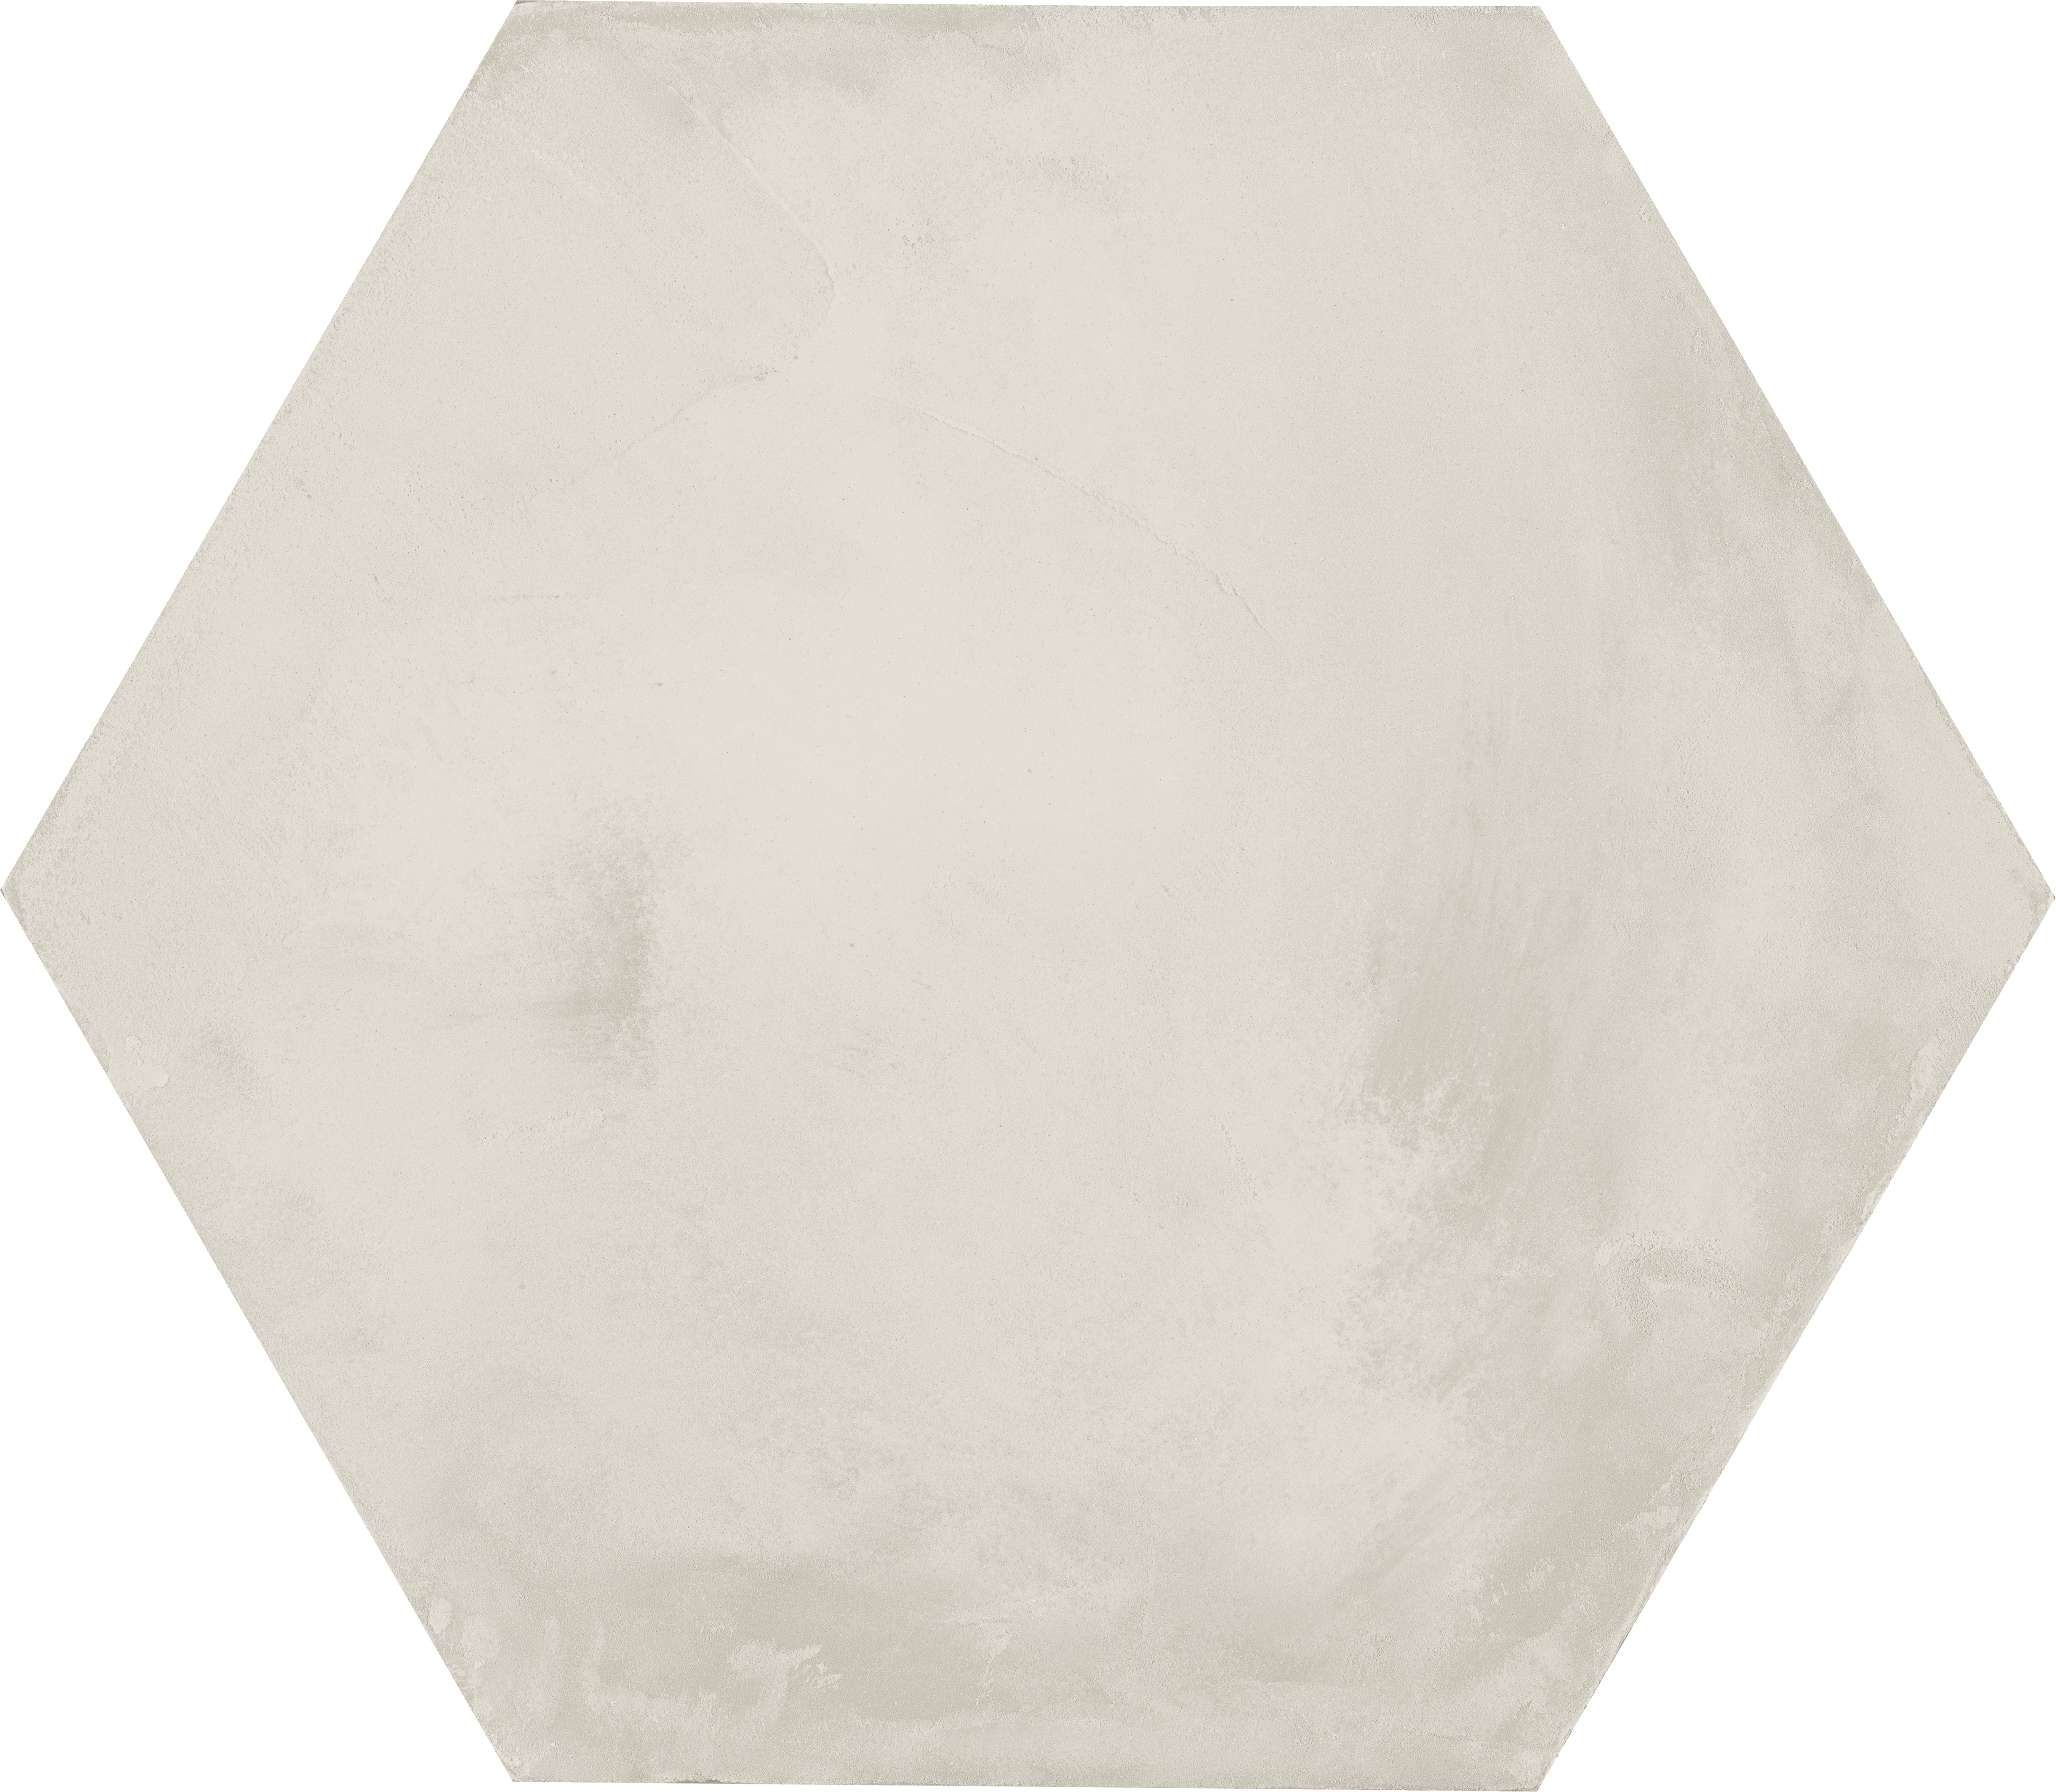 Marcacorona Bianco Naturale – Matt Bianco I402 matt natur 21,6x25cm Esagona 9mm